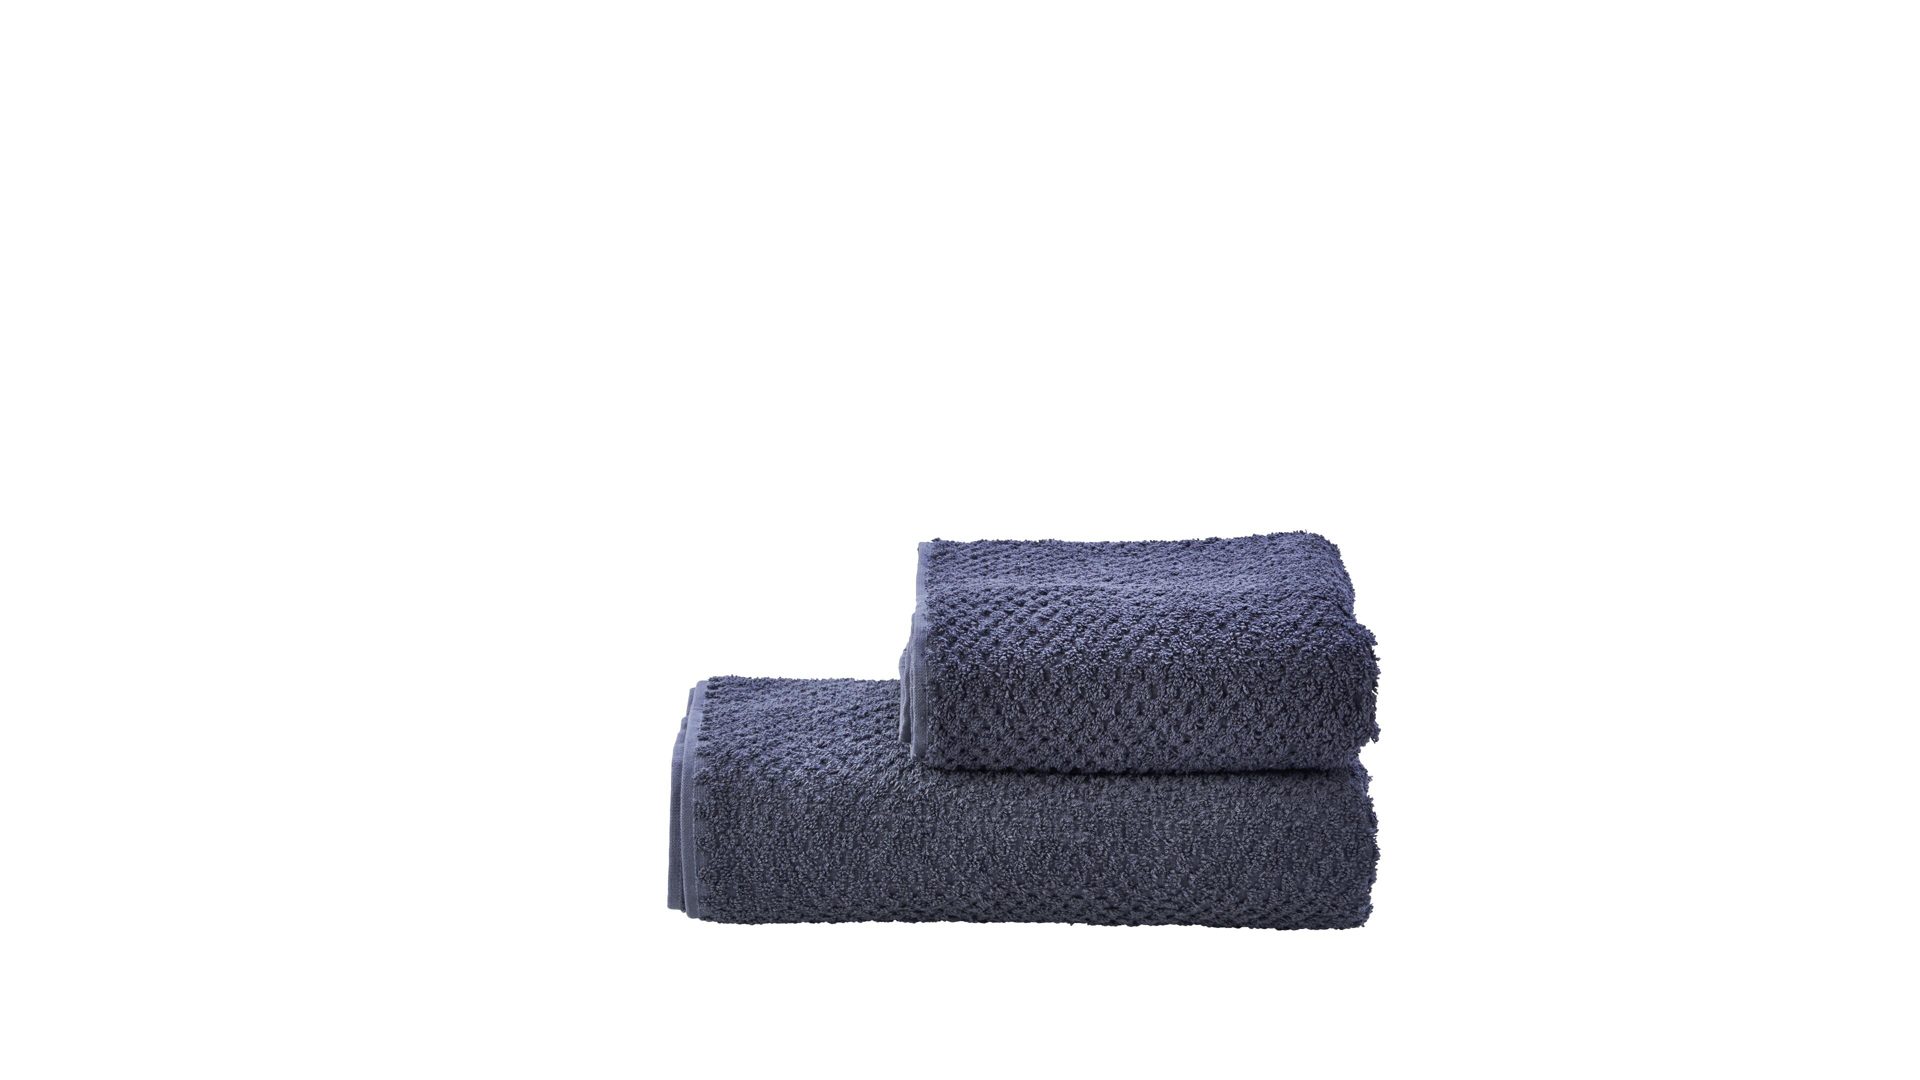 Handtuch-Set Done® by karabel home company aus Stoff in Grau DONE® Handtuch-Set Provence Honeycomb - Heimtextilien anthrazitfarbene Baumwolle  – zweiteilig